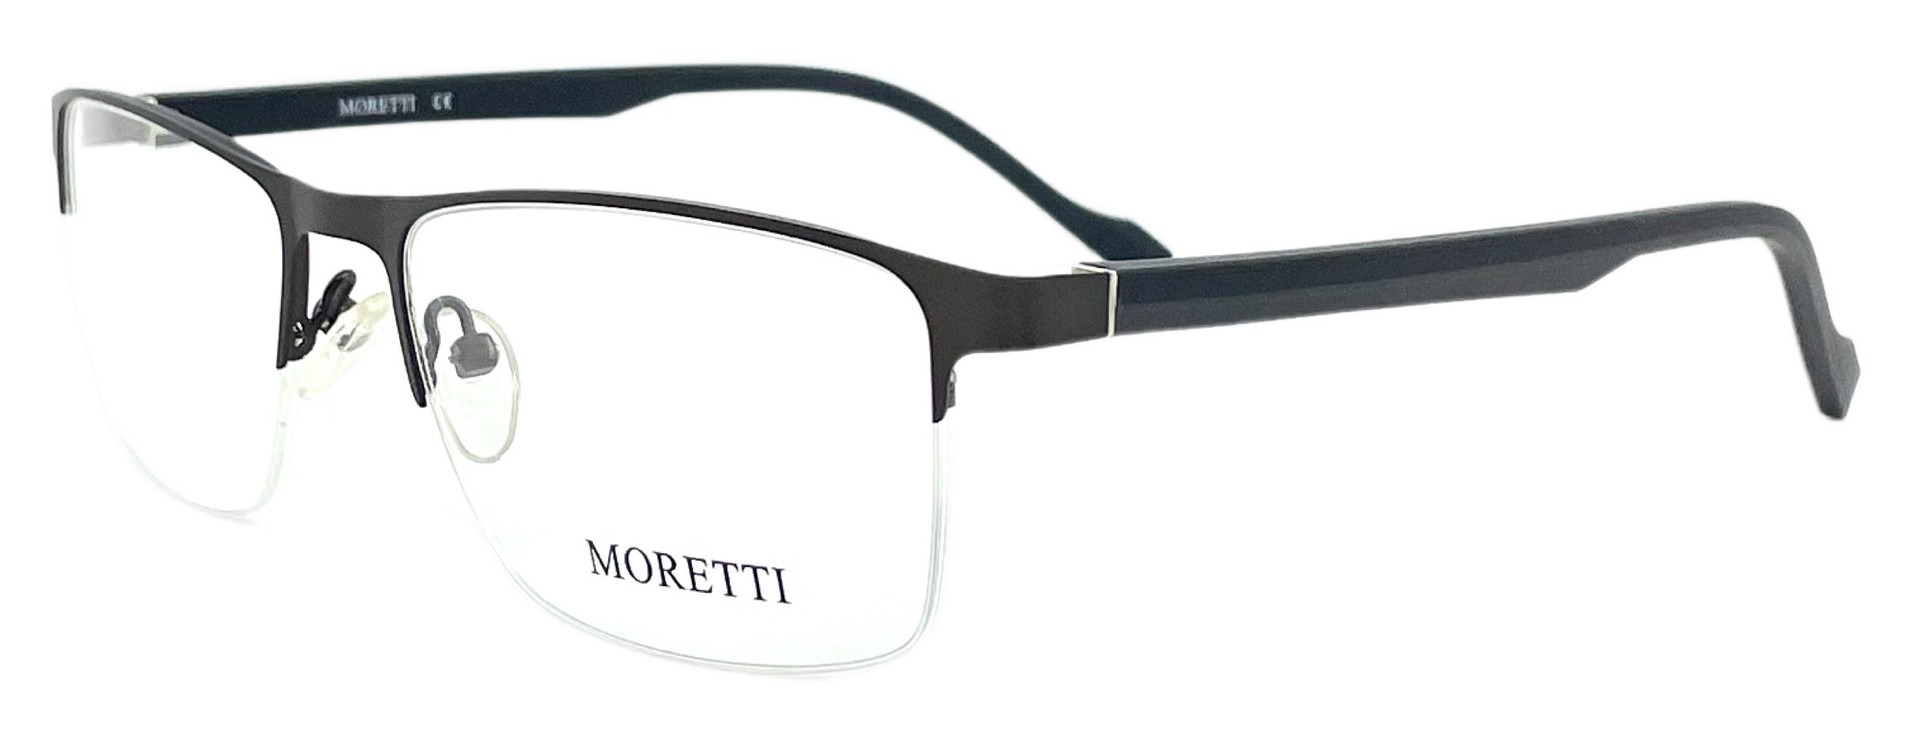 Moretti HT21-65 C3A 2